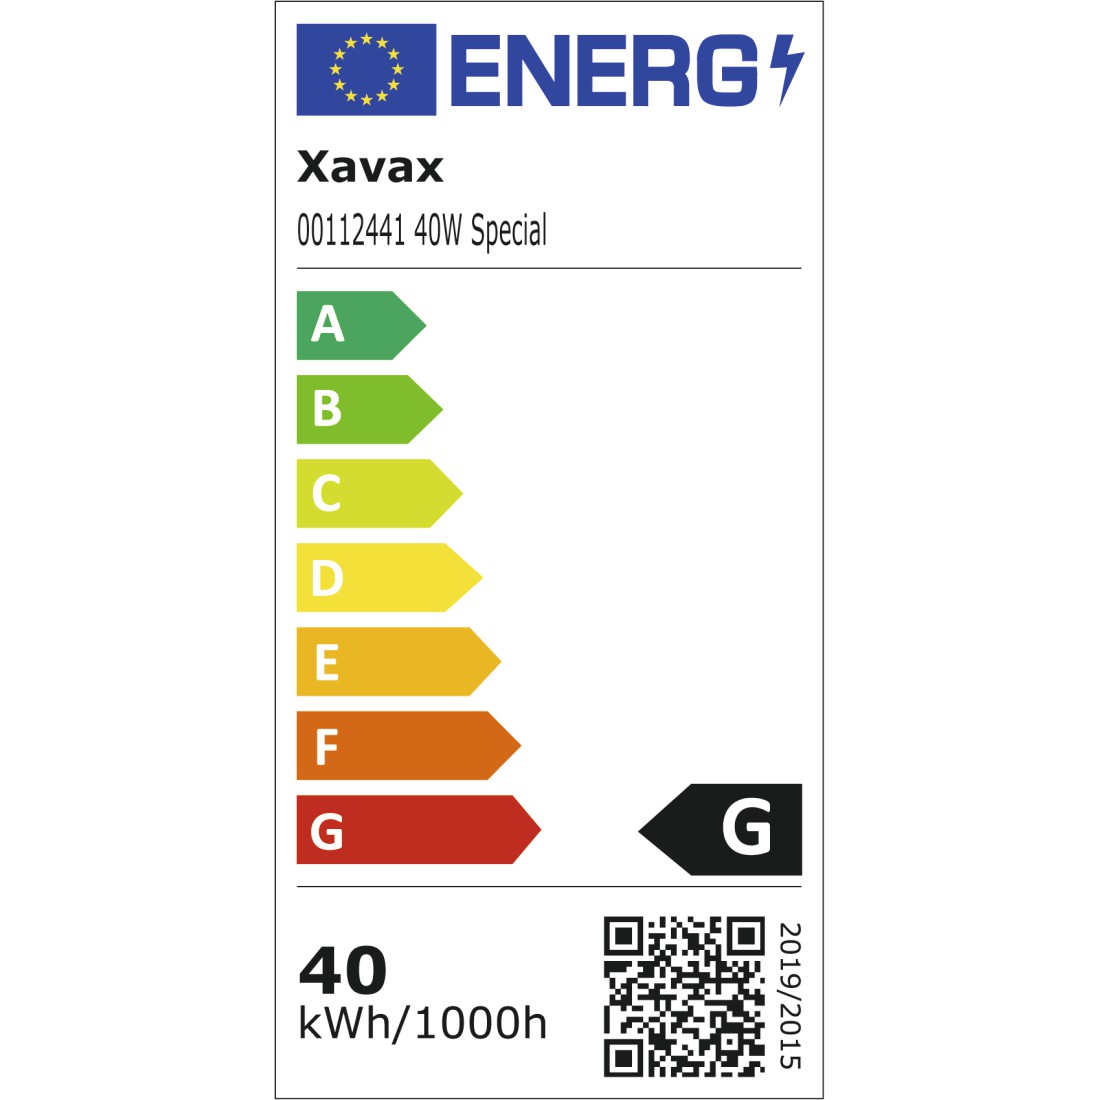 Xavax Temperaturregler mit Fühler (Thermostat für Heizkörper, Kühlung,  essentials Heizkörperthermostat elektronisch für z. B. Terrarium,  Gewächshaus) , geräuscharm, energiespar Thermostat